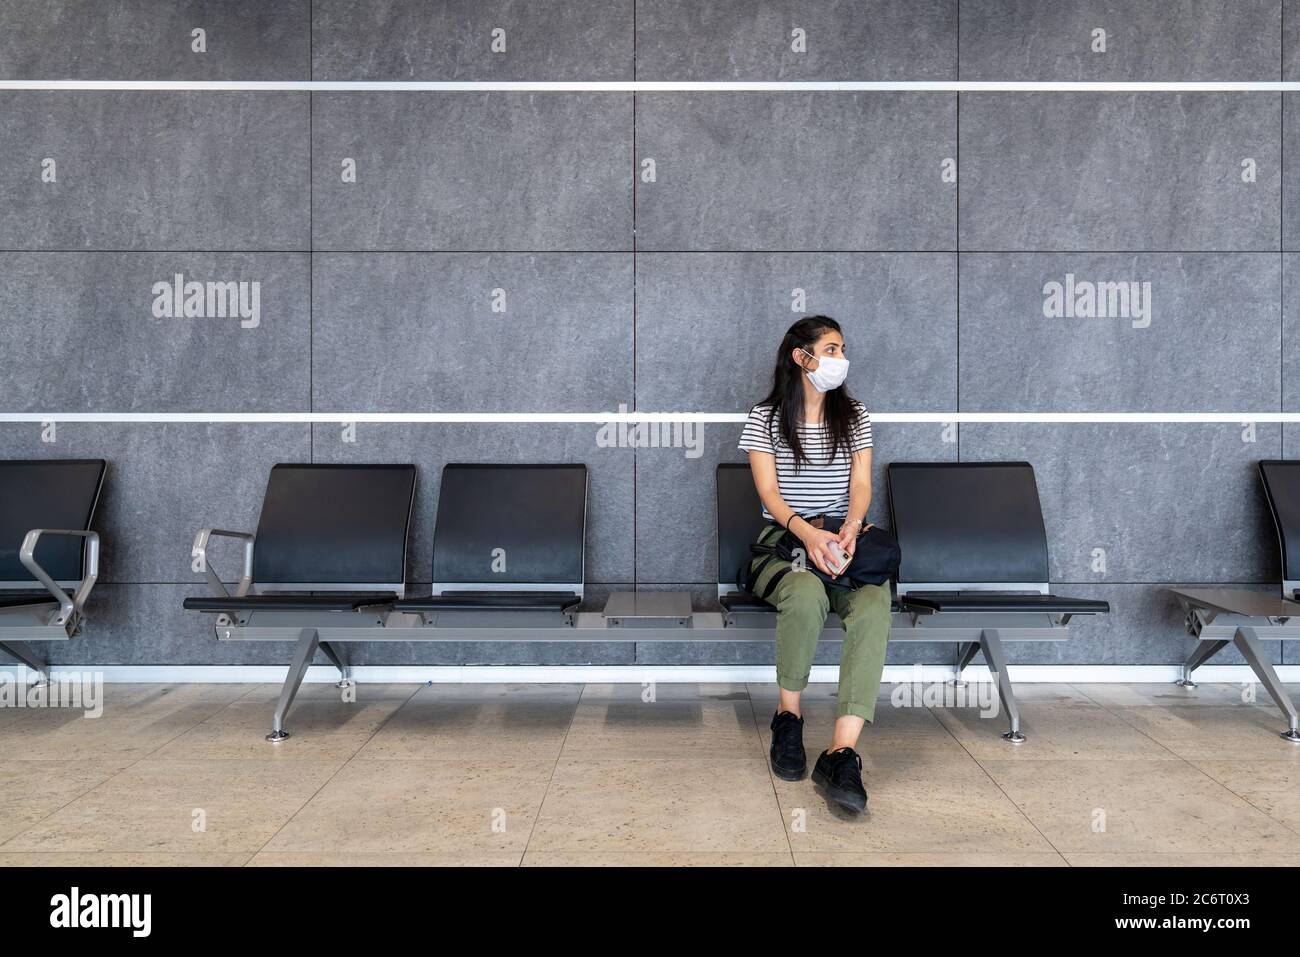 Une jeune femme avec masque de protection est assise dans une salle d'attente et regarde autour de l'aéroport. Virus Corona en rupture. Photo de haute qualité Banque D'Images